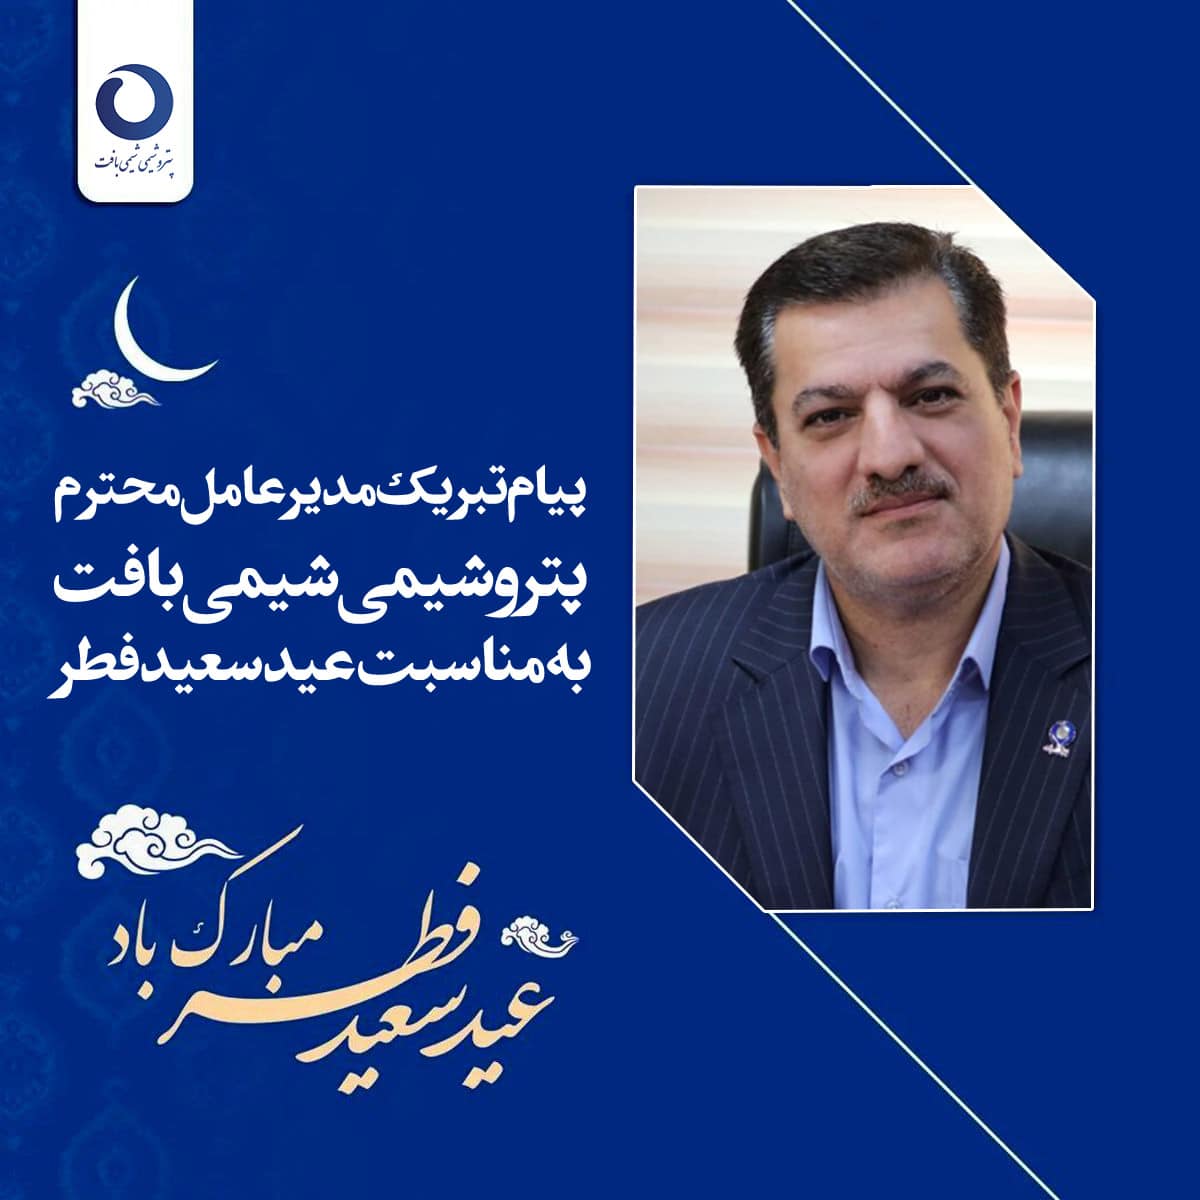 پیام تبریک مدیرعامل محترم به مناسبت عید سعید فطر